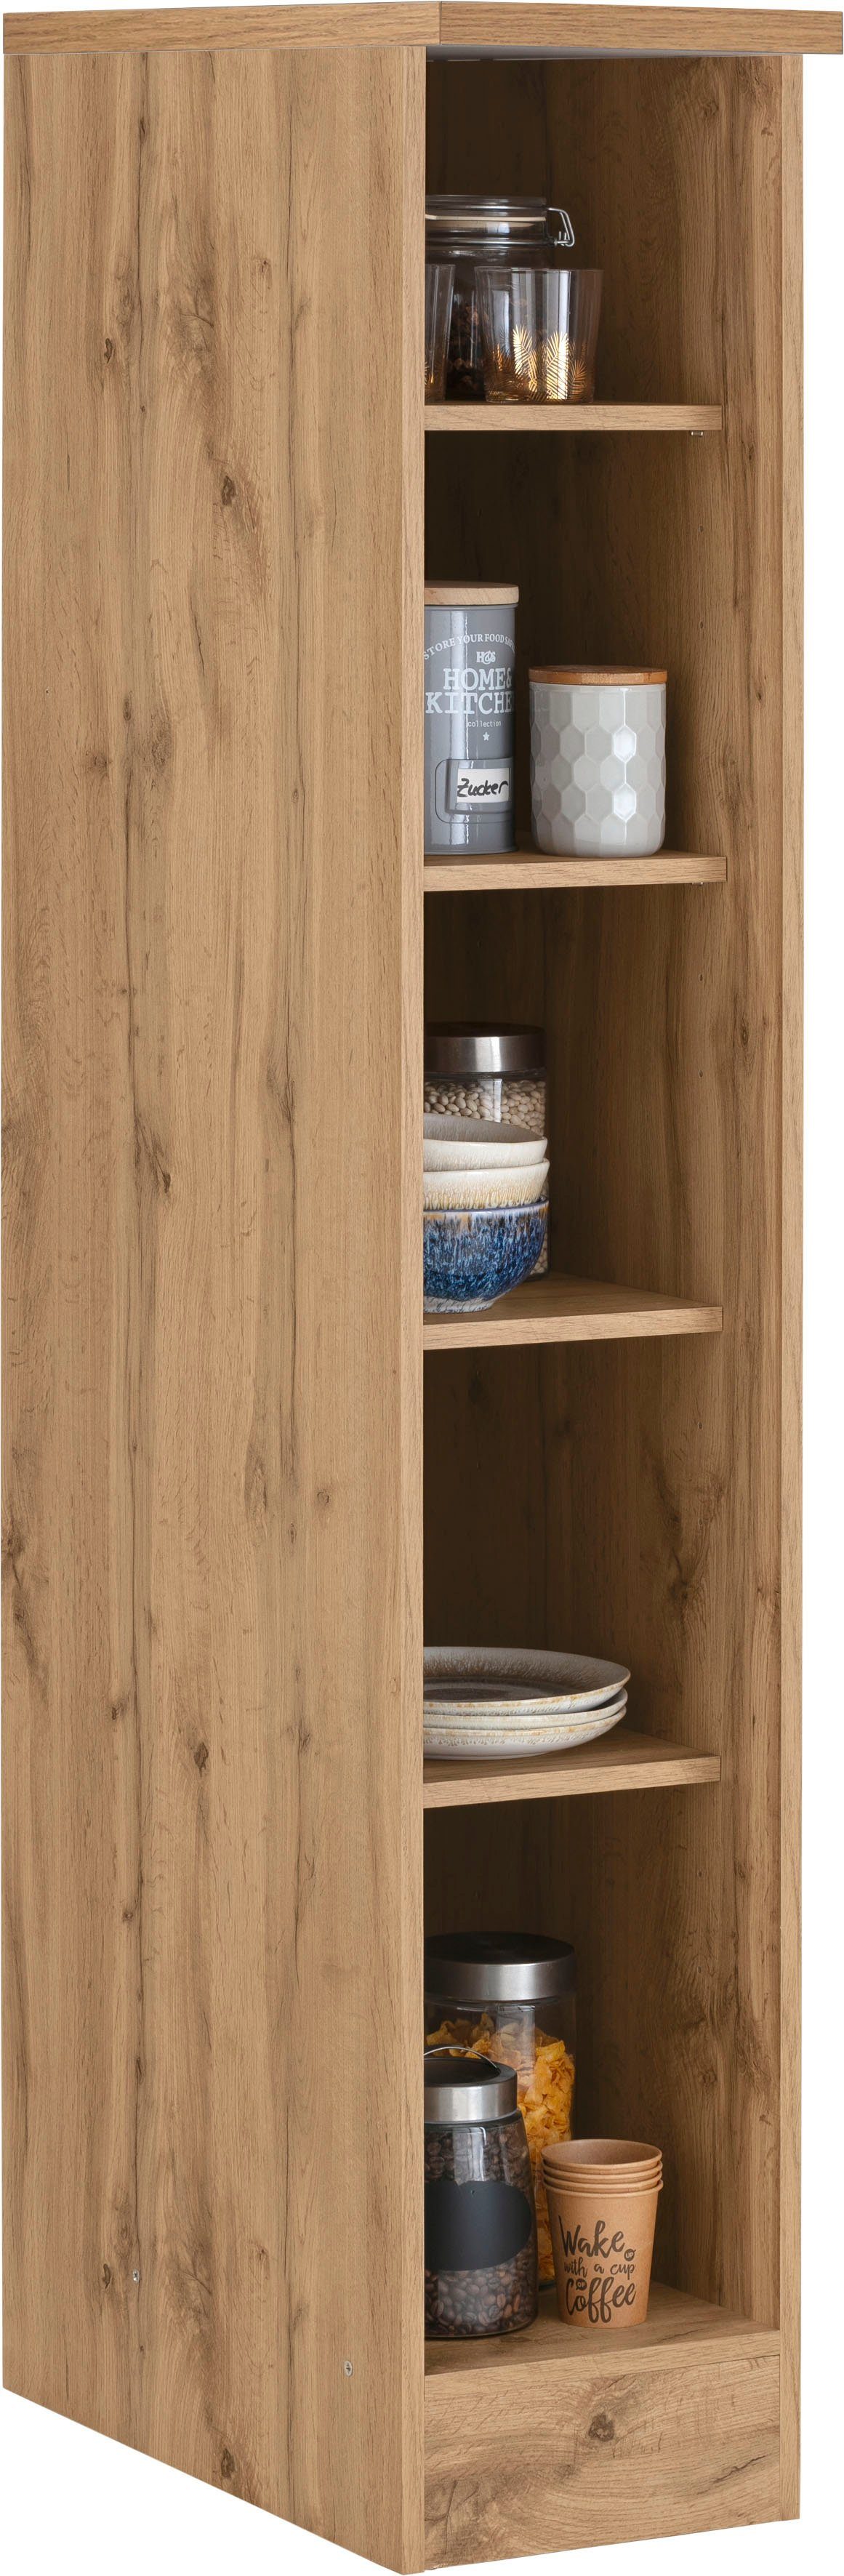 HELD MÖBEL Küchenregal »Colmar«, 30 cm breit, 165 cm hoch, 4 verstellbare  Einlegeböden, für viel Stauraum online kaufen | OTTO